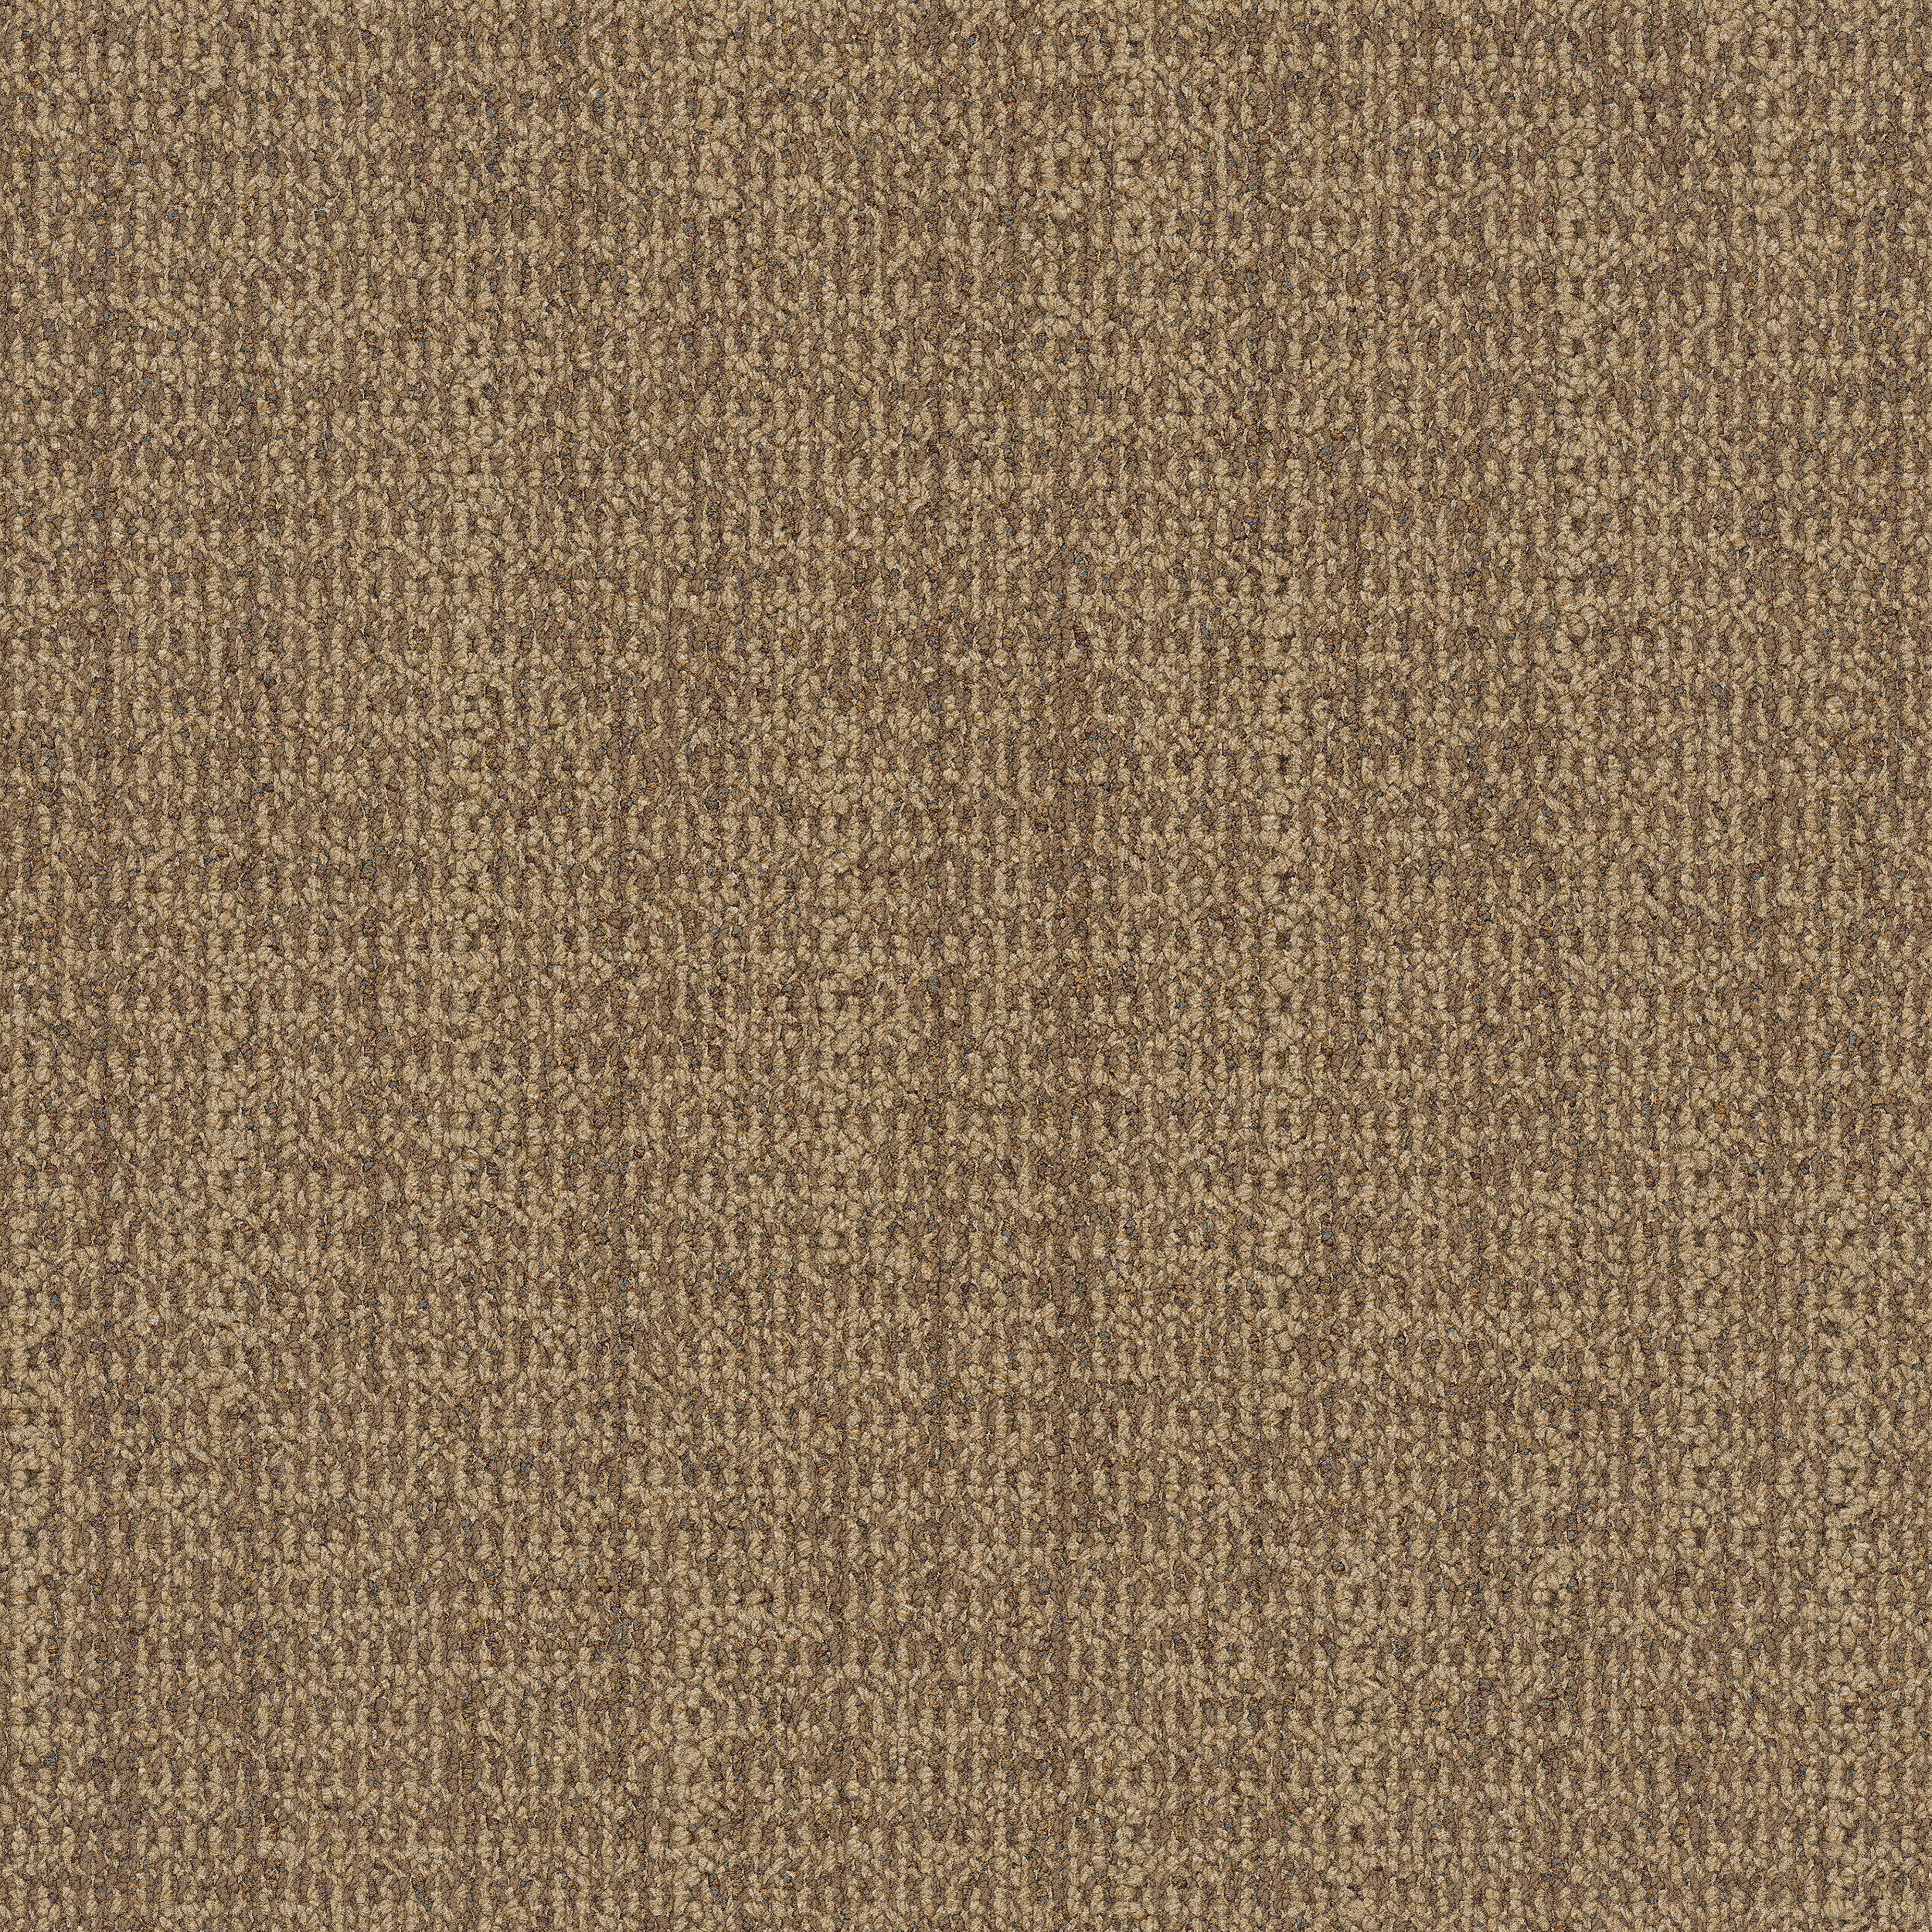 WG100 Carpet Tile in Amber image number 12